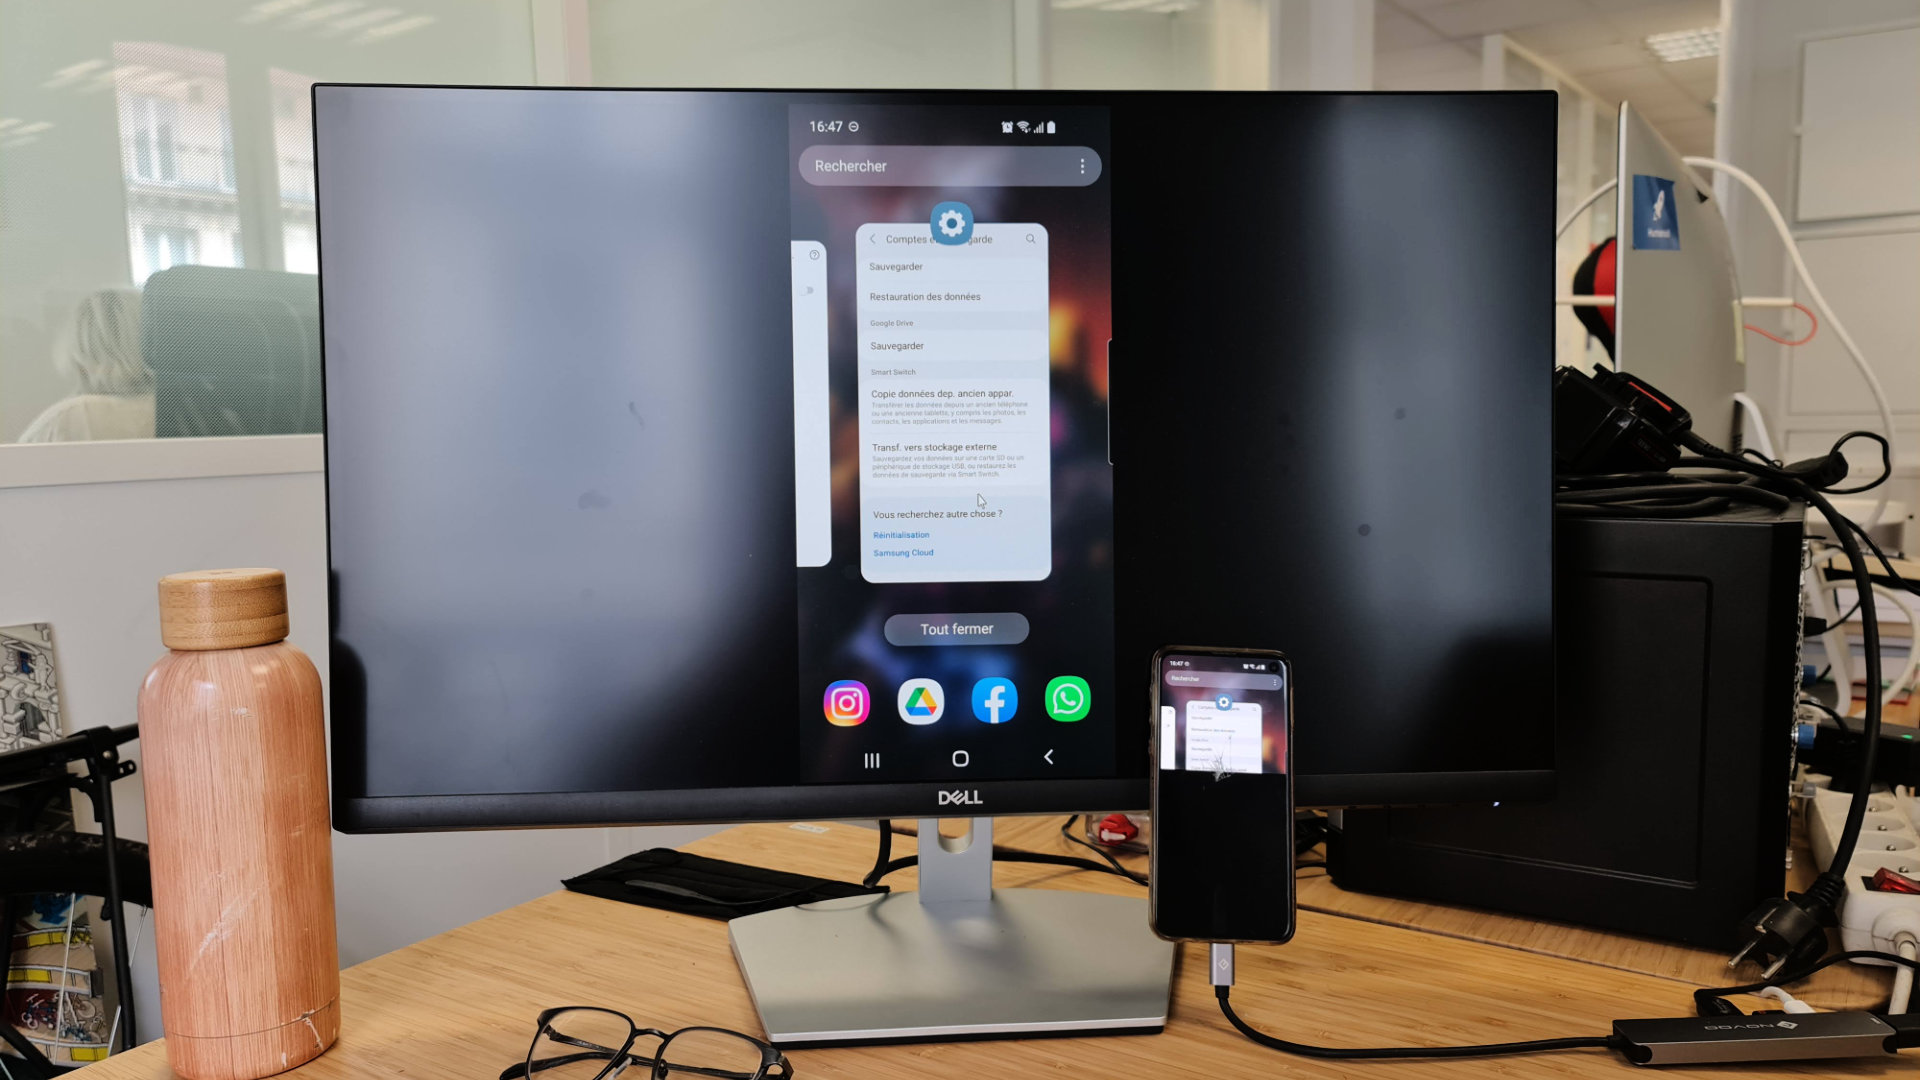 Comment afficher l'écran d'un smartphone sur un PC ?